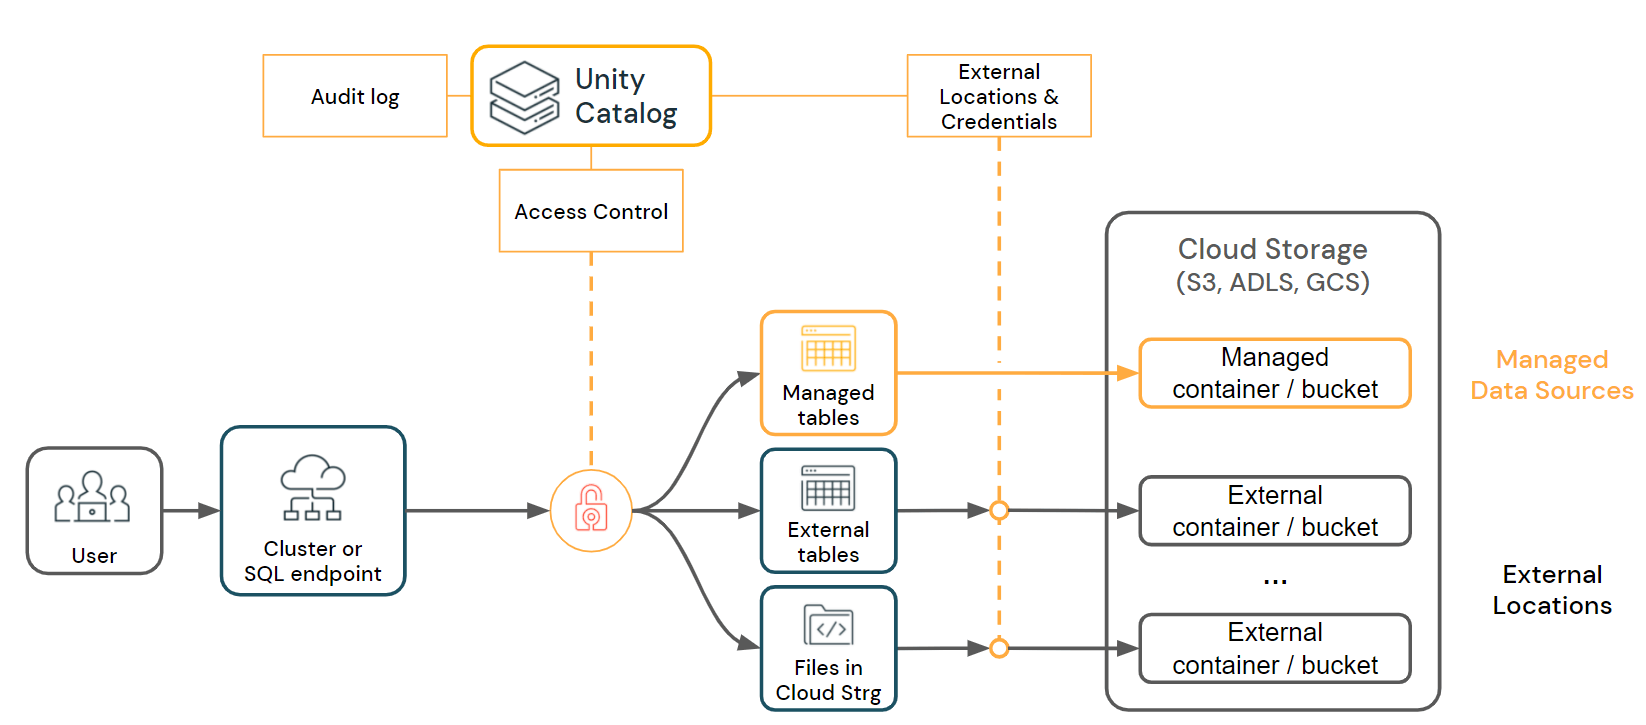 Unity Catalog支持对托管表、外部表和文件进行细粒度访问控制